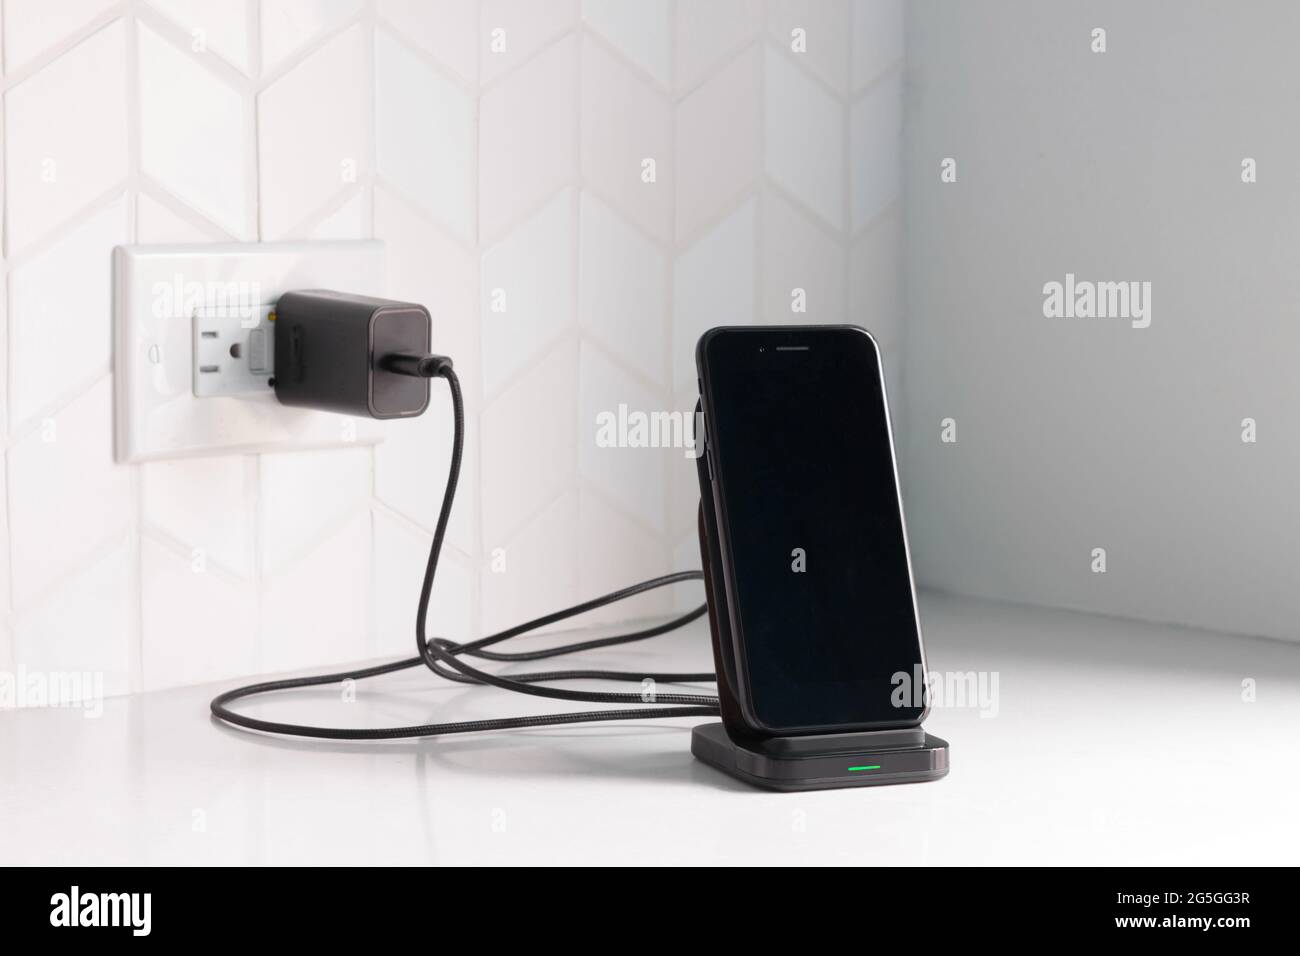 un teléfono inteligente negro conectado a una estación de carga inalámbrica conectado a una encimera de cocina o banco blanco con espacio para copias Foto de stock